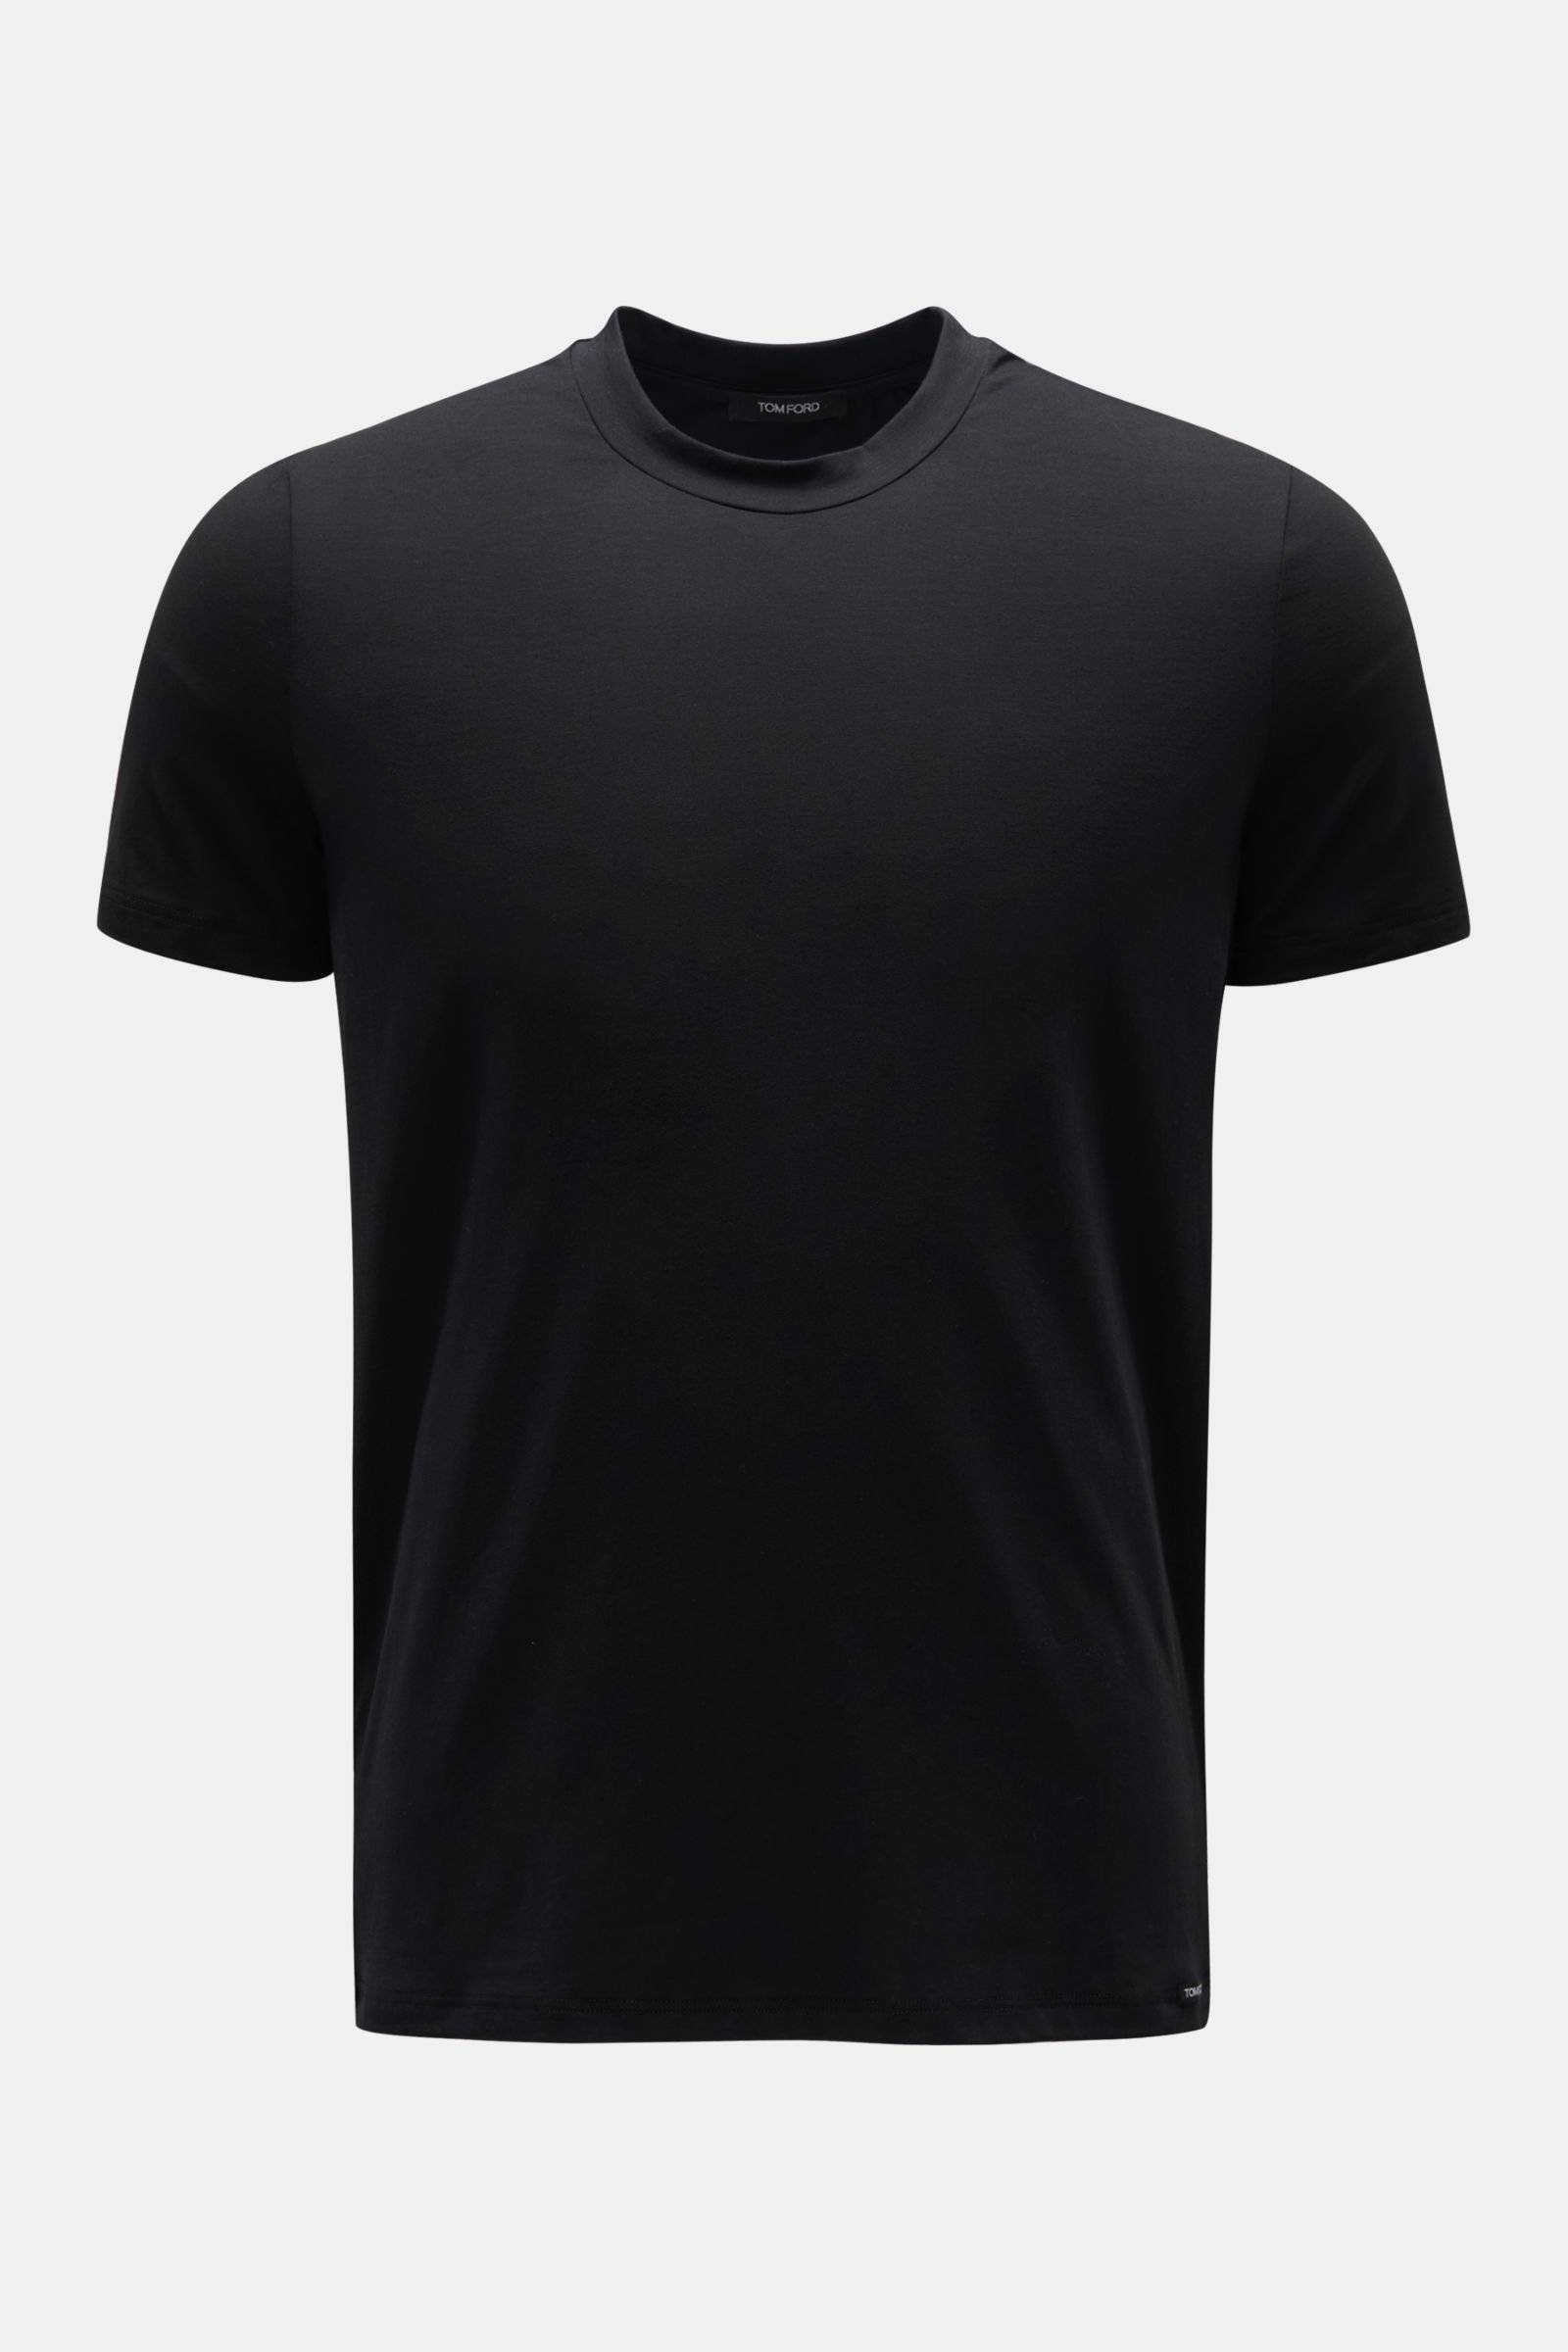 Rundhals-Unterhemd schwarz